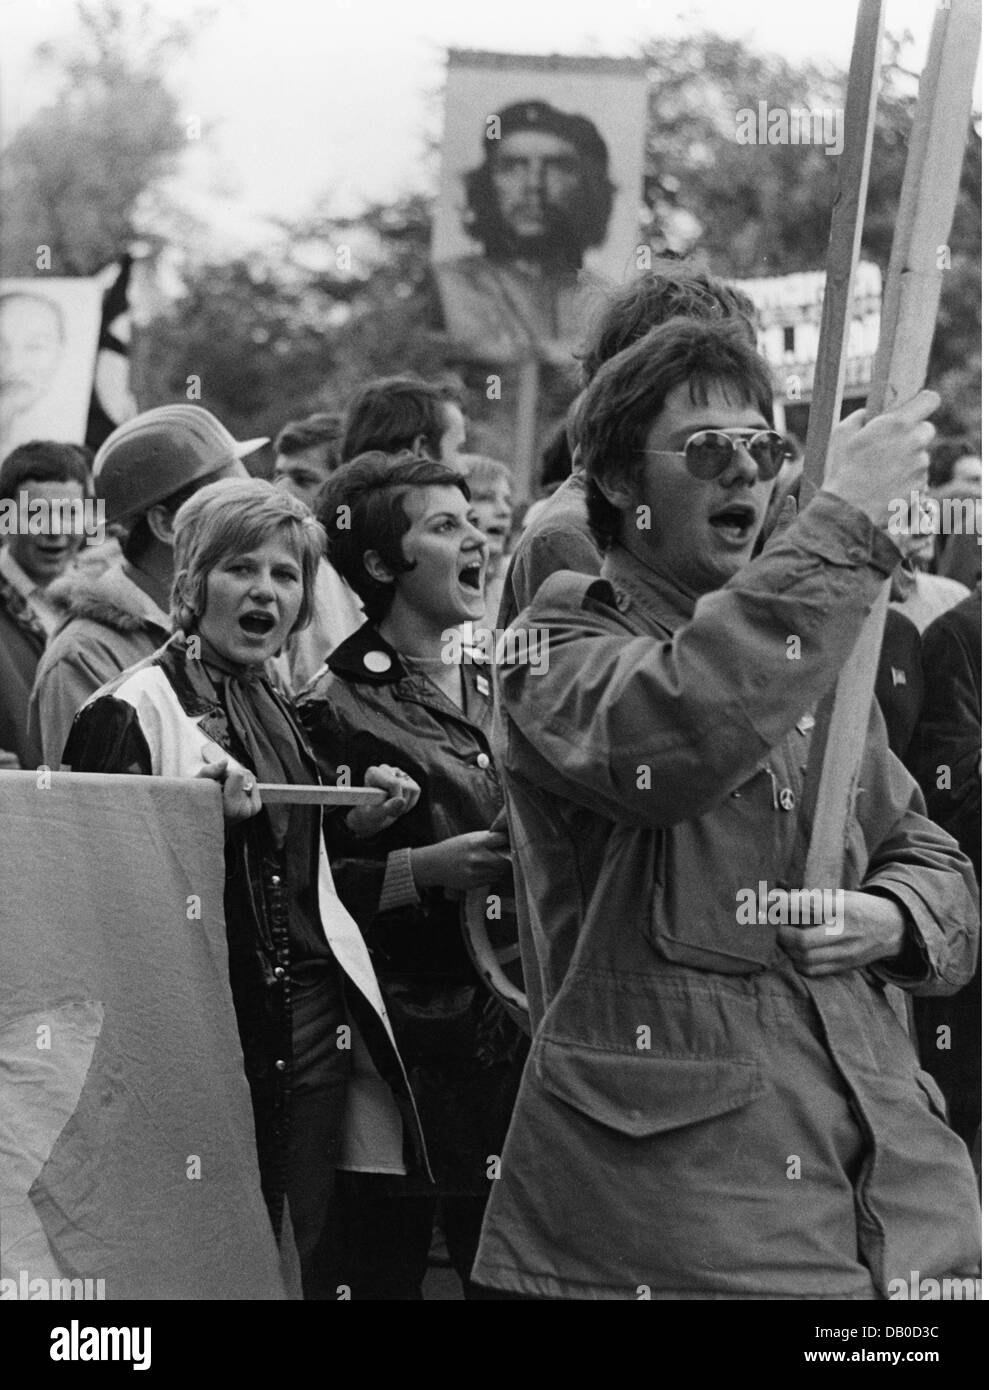 Politique, manifestations, Allemagne, manifestation, Munich, 1968 / 1969, droits additionnels-Clearences-non disponible Banque D'Images